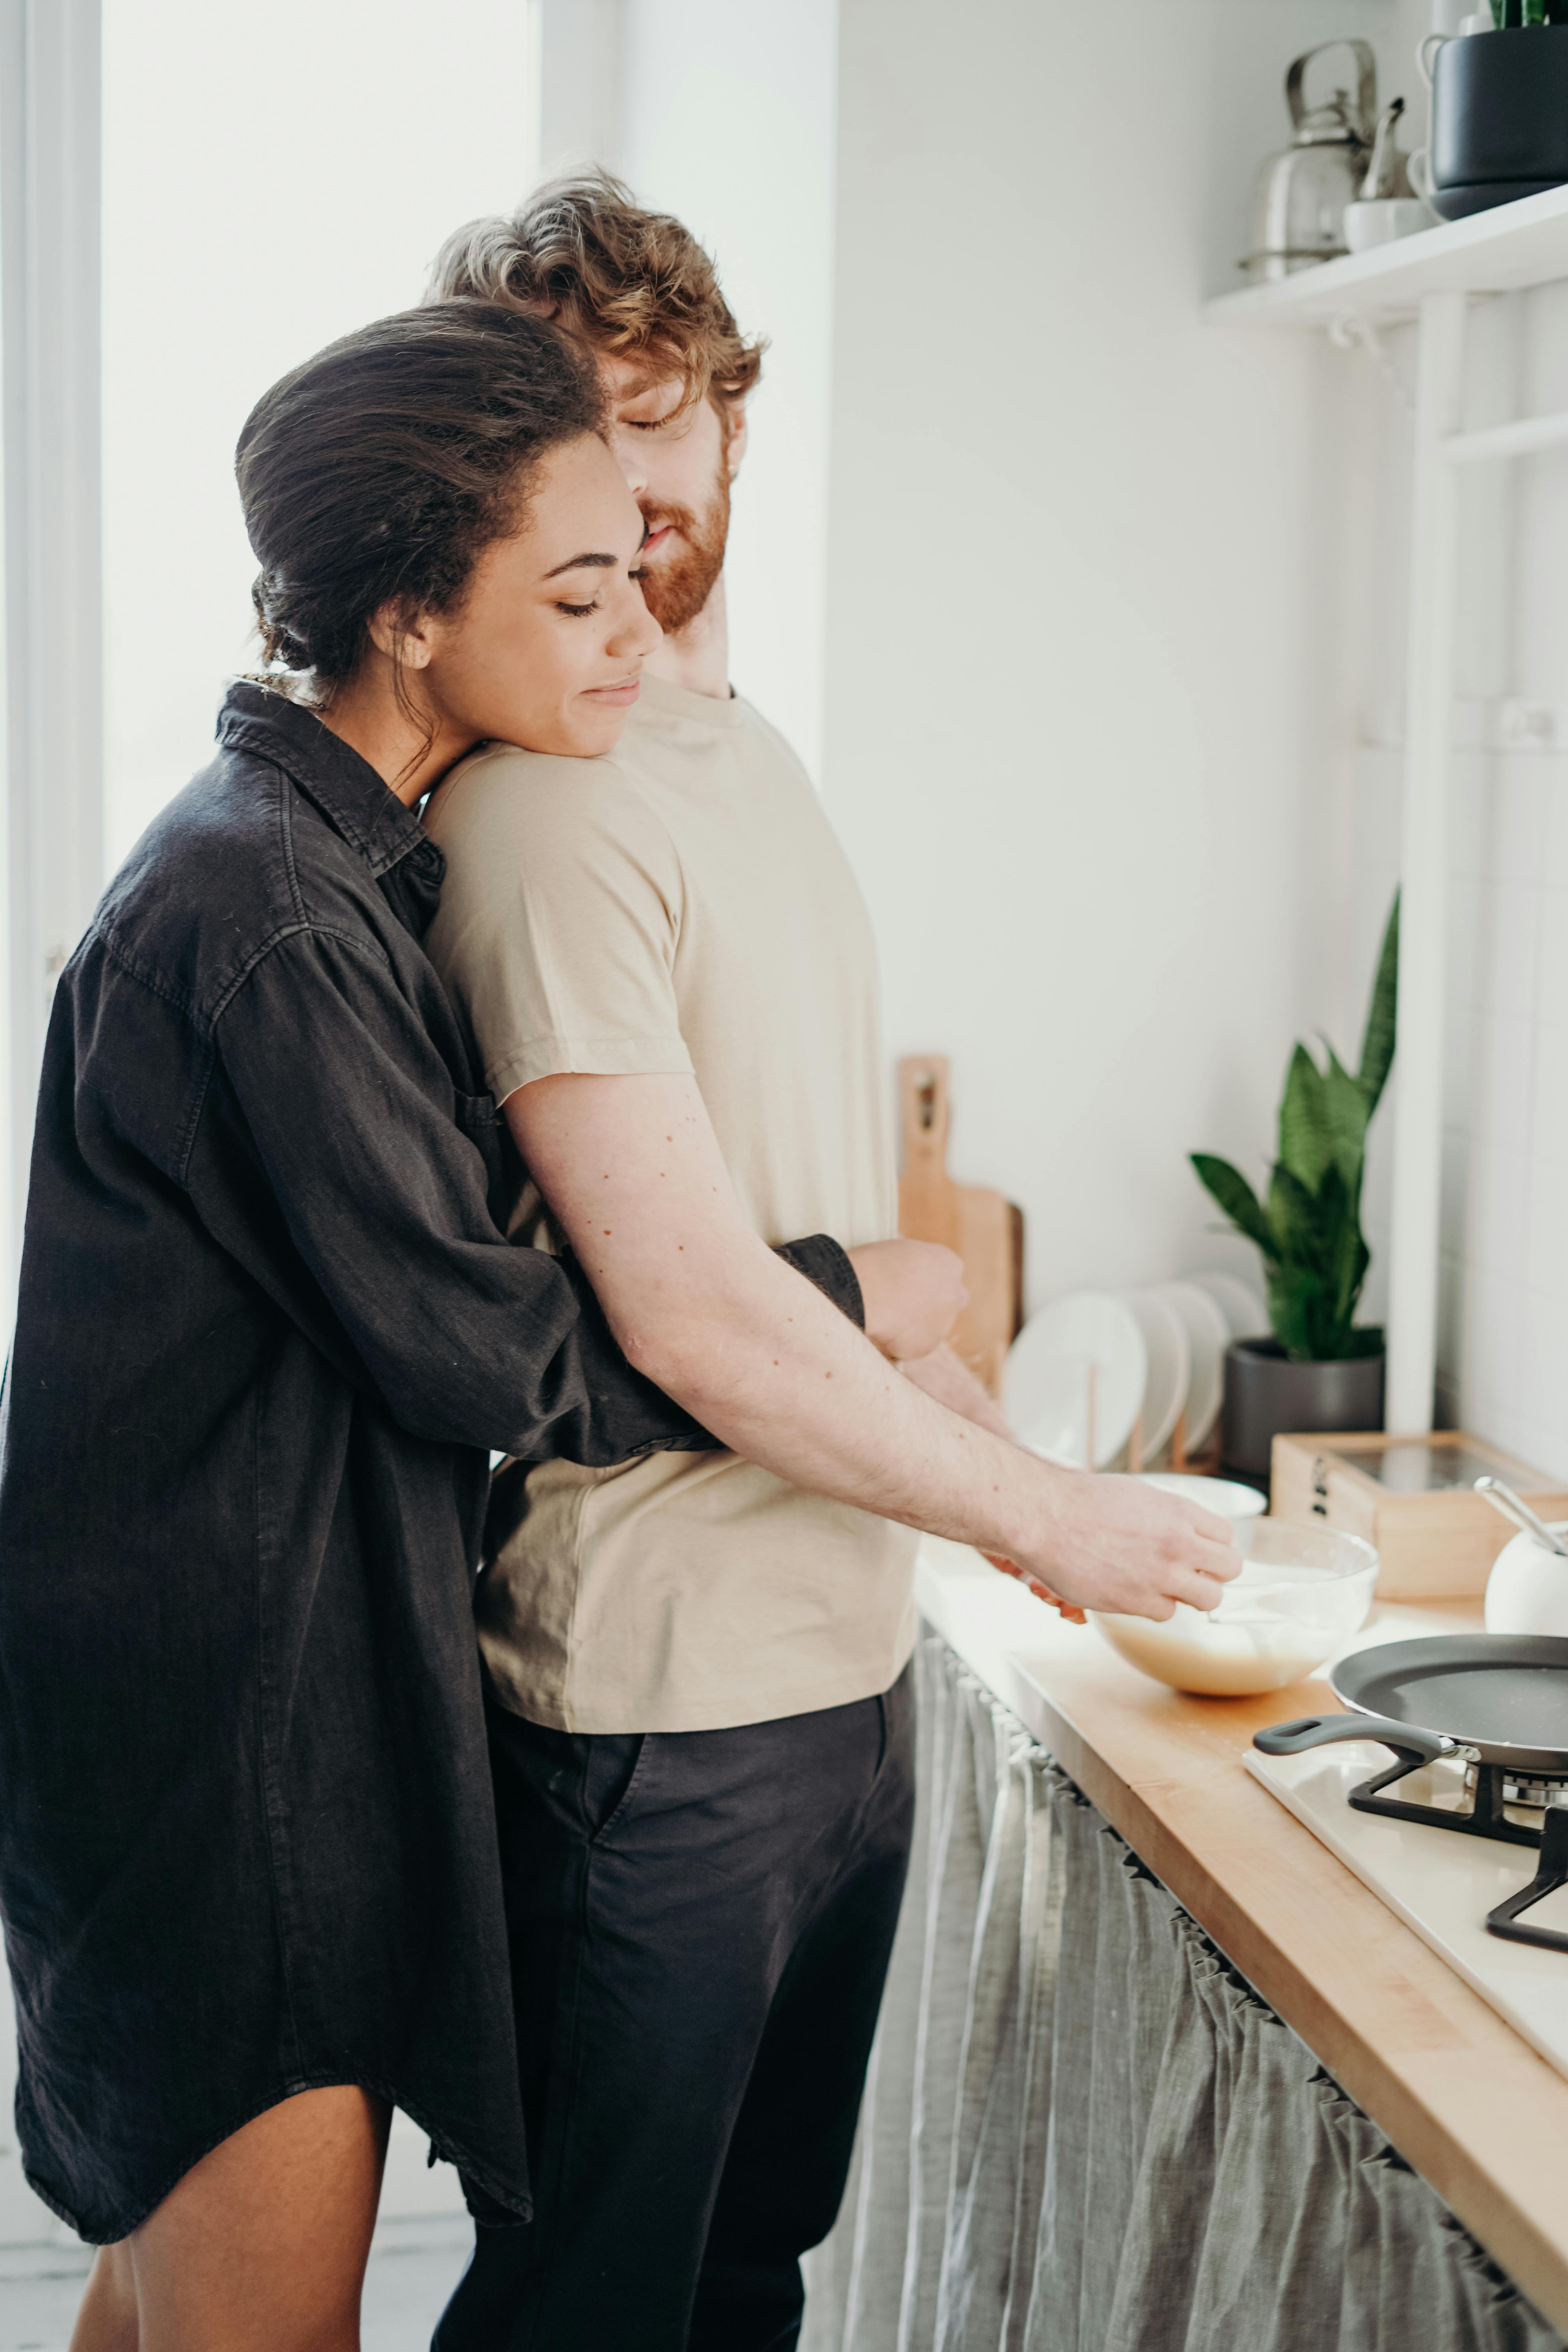 Un couple s'embrassant pendant que l'homme prépare un repas | Source : Pexels